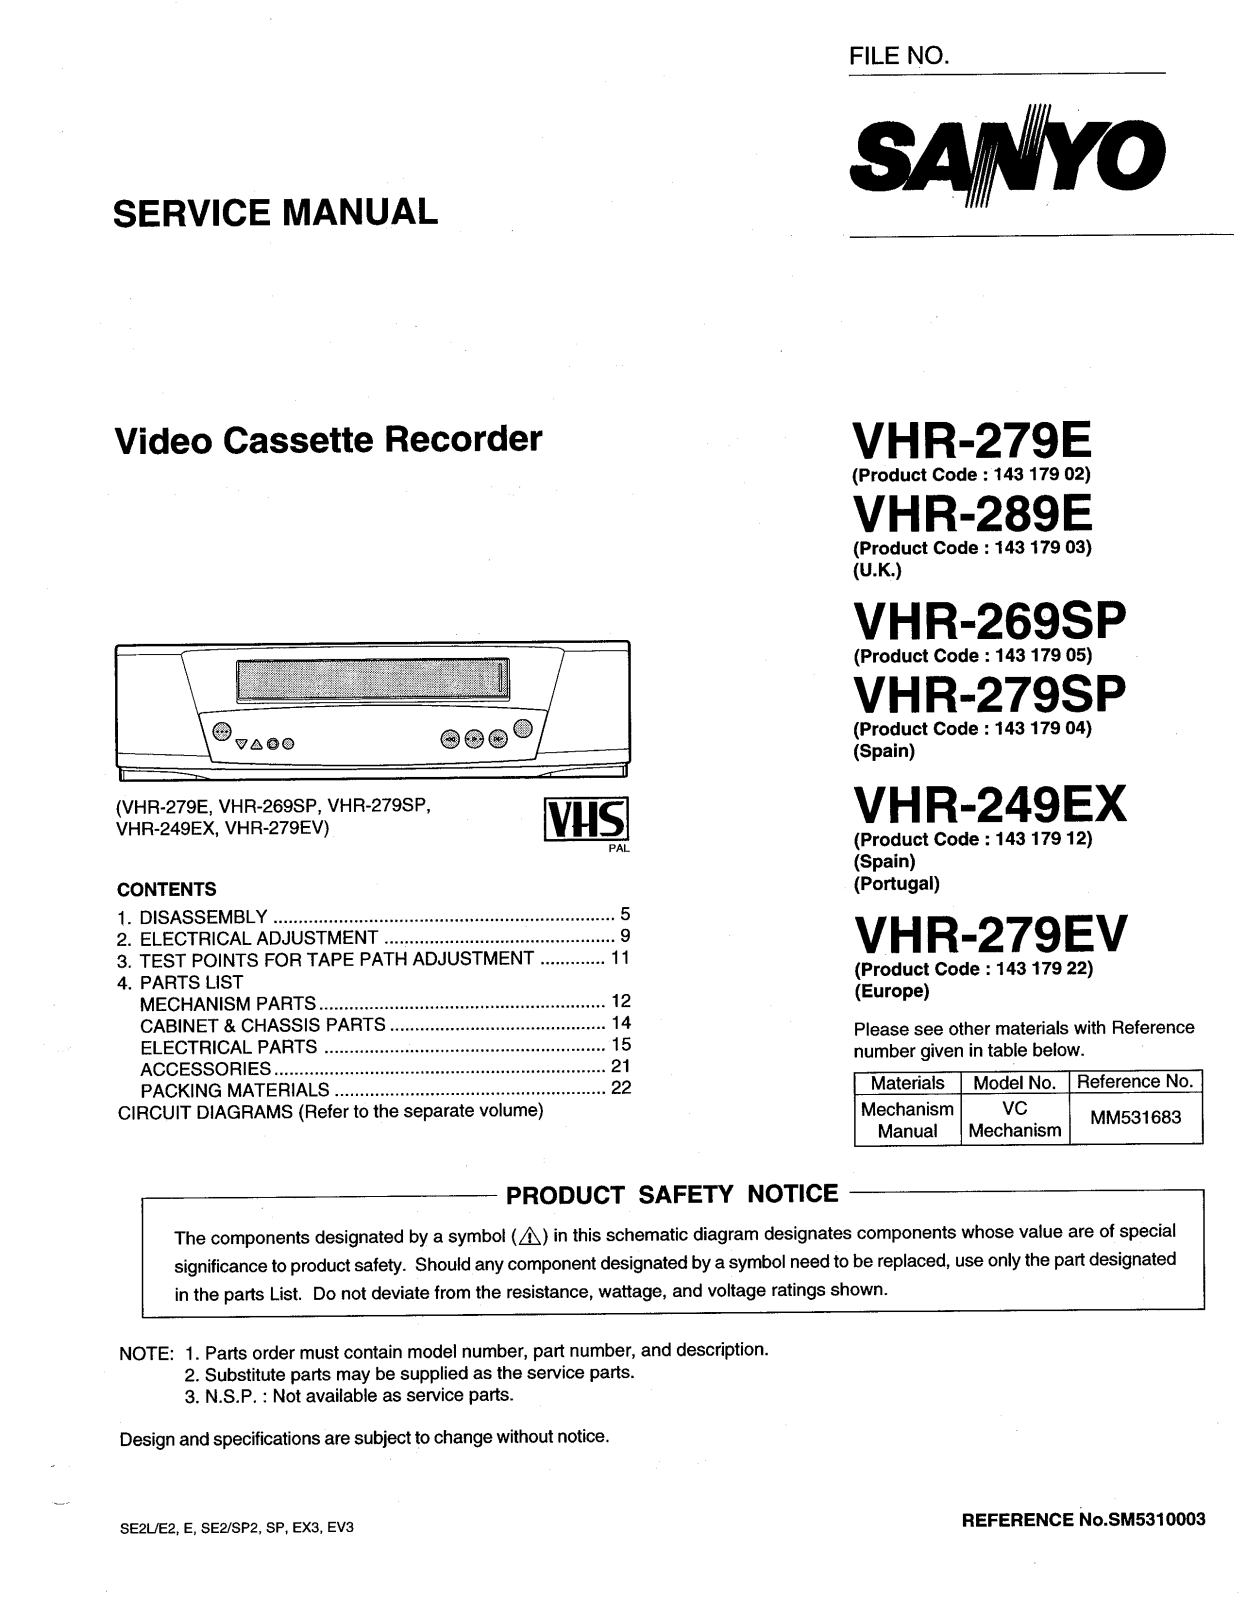 SANYO VHR-249, VHR-269, VHR-279, VHR-289 Service Manual